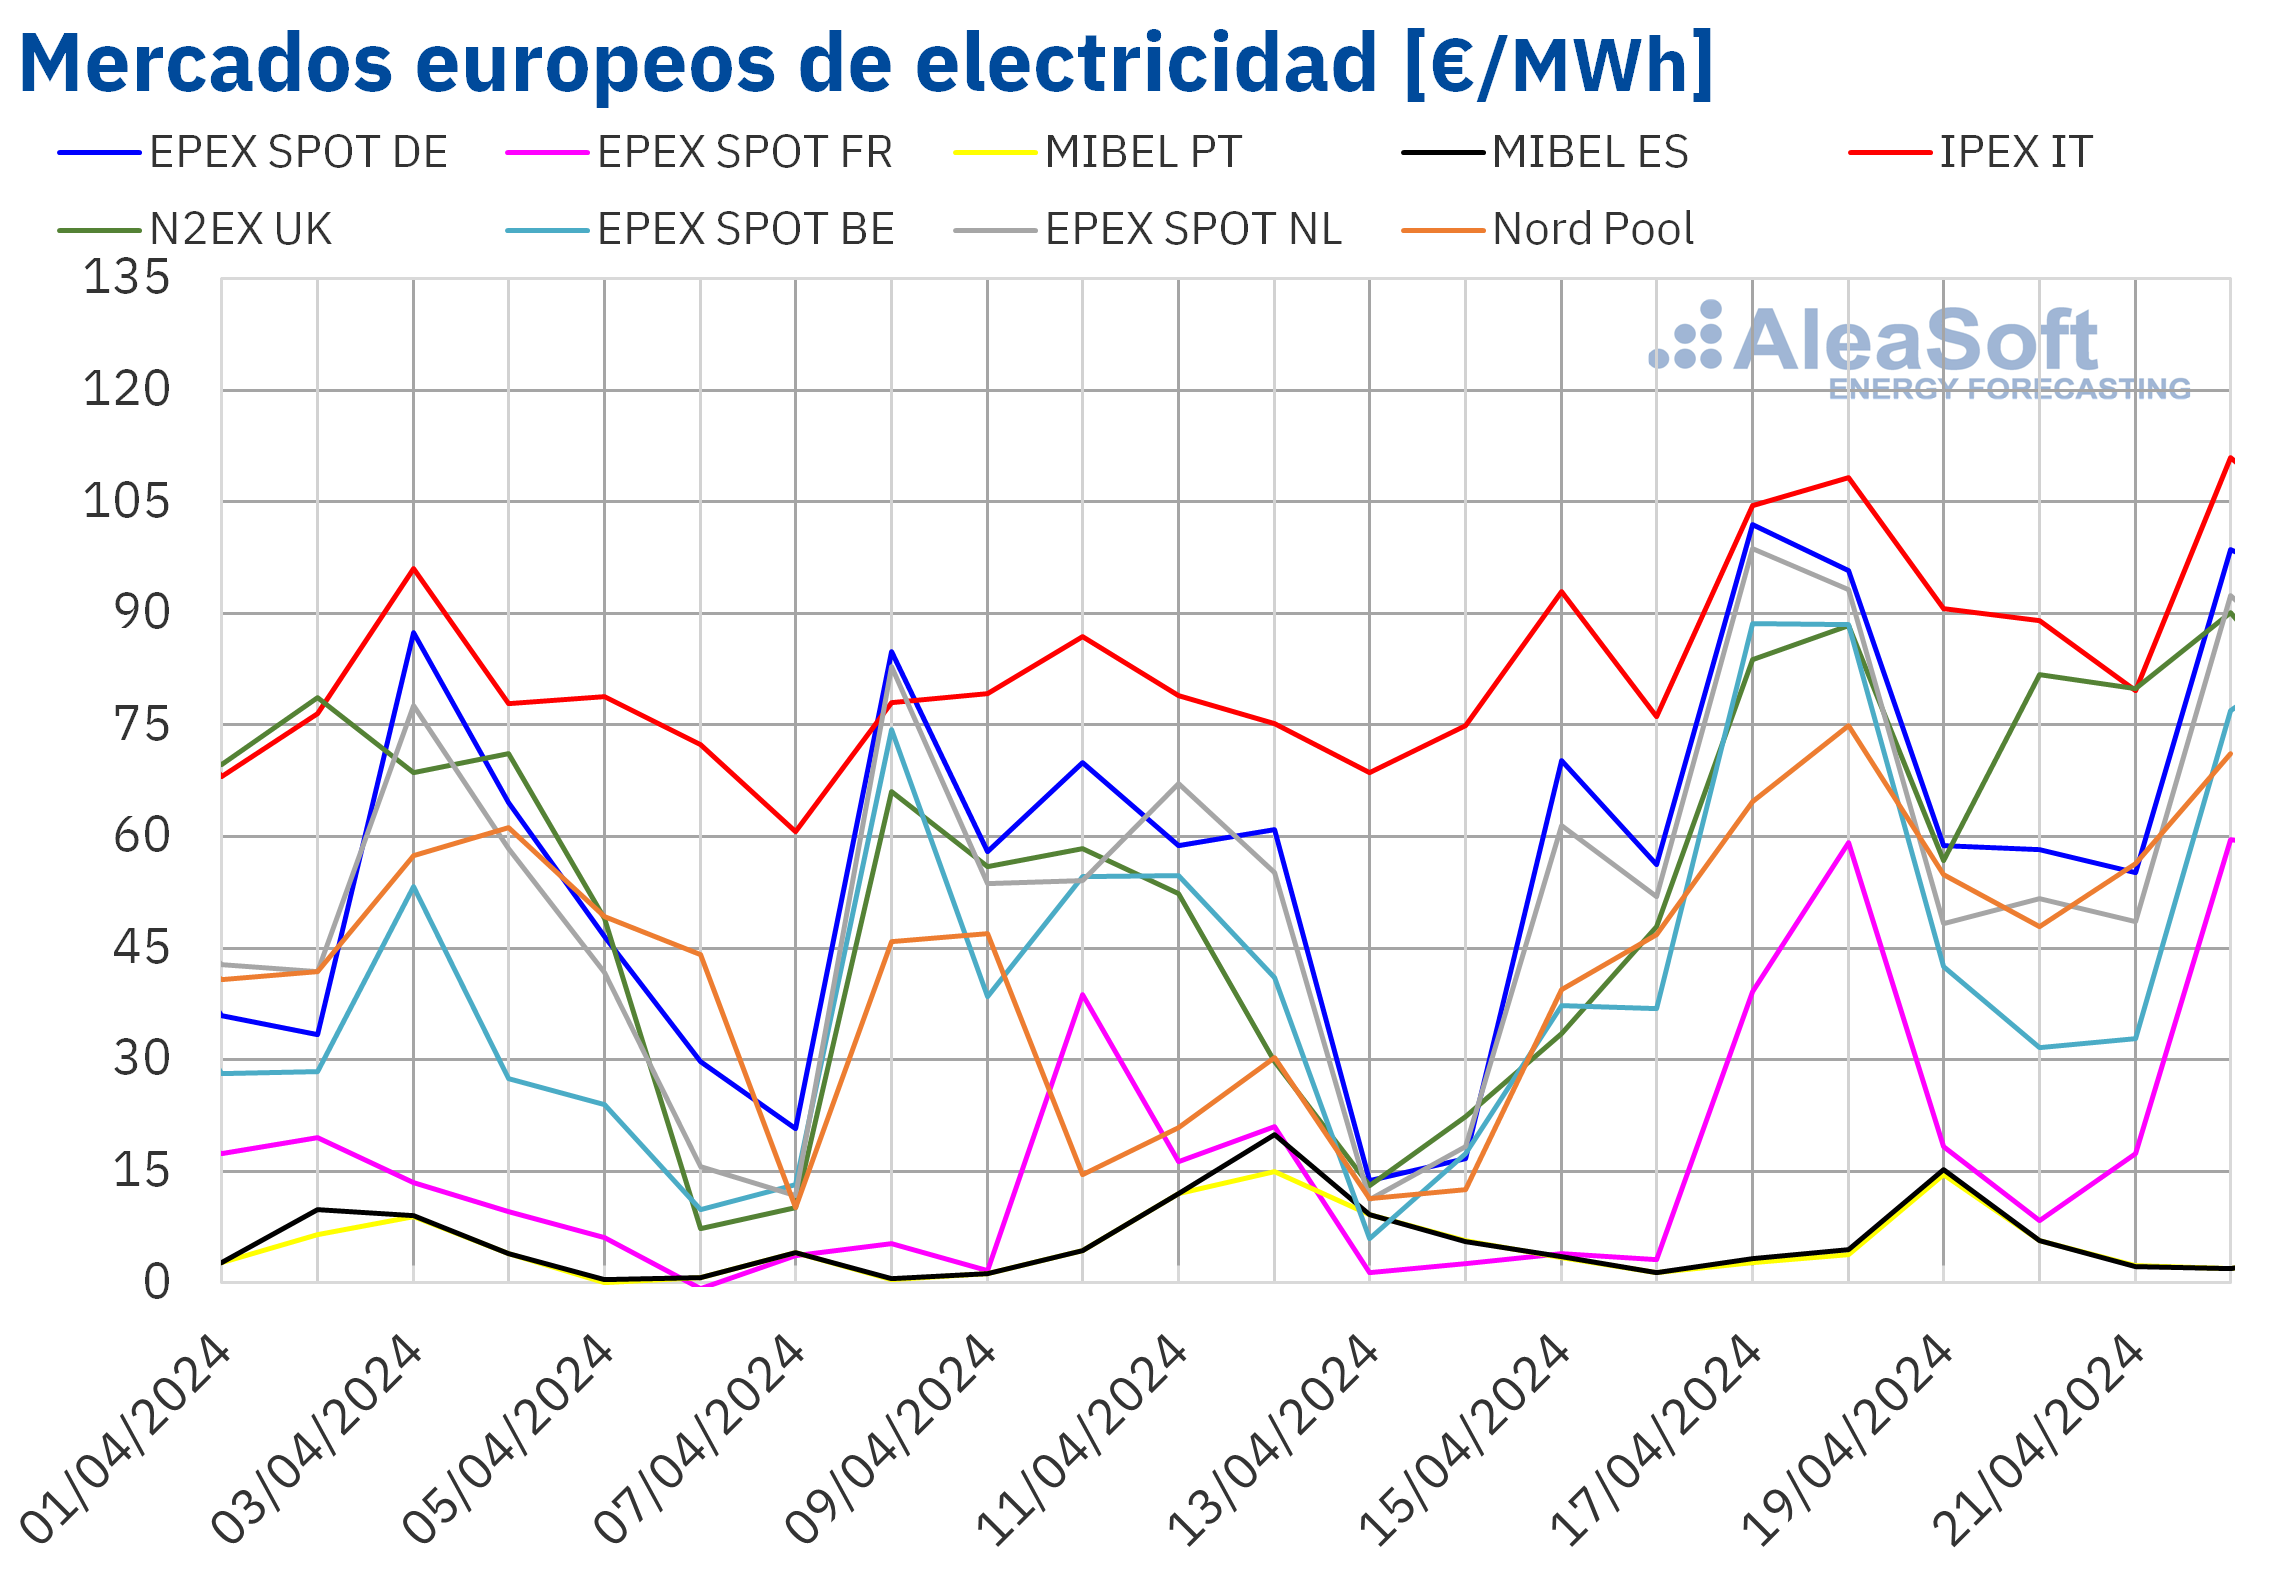 alt - https://static.comunicae.com/photos/notas/1254172/20240422-AleaSoft-Precios-mercados-europeos-electricidad.png